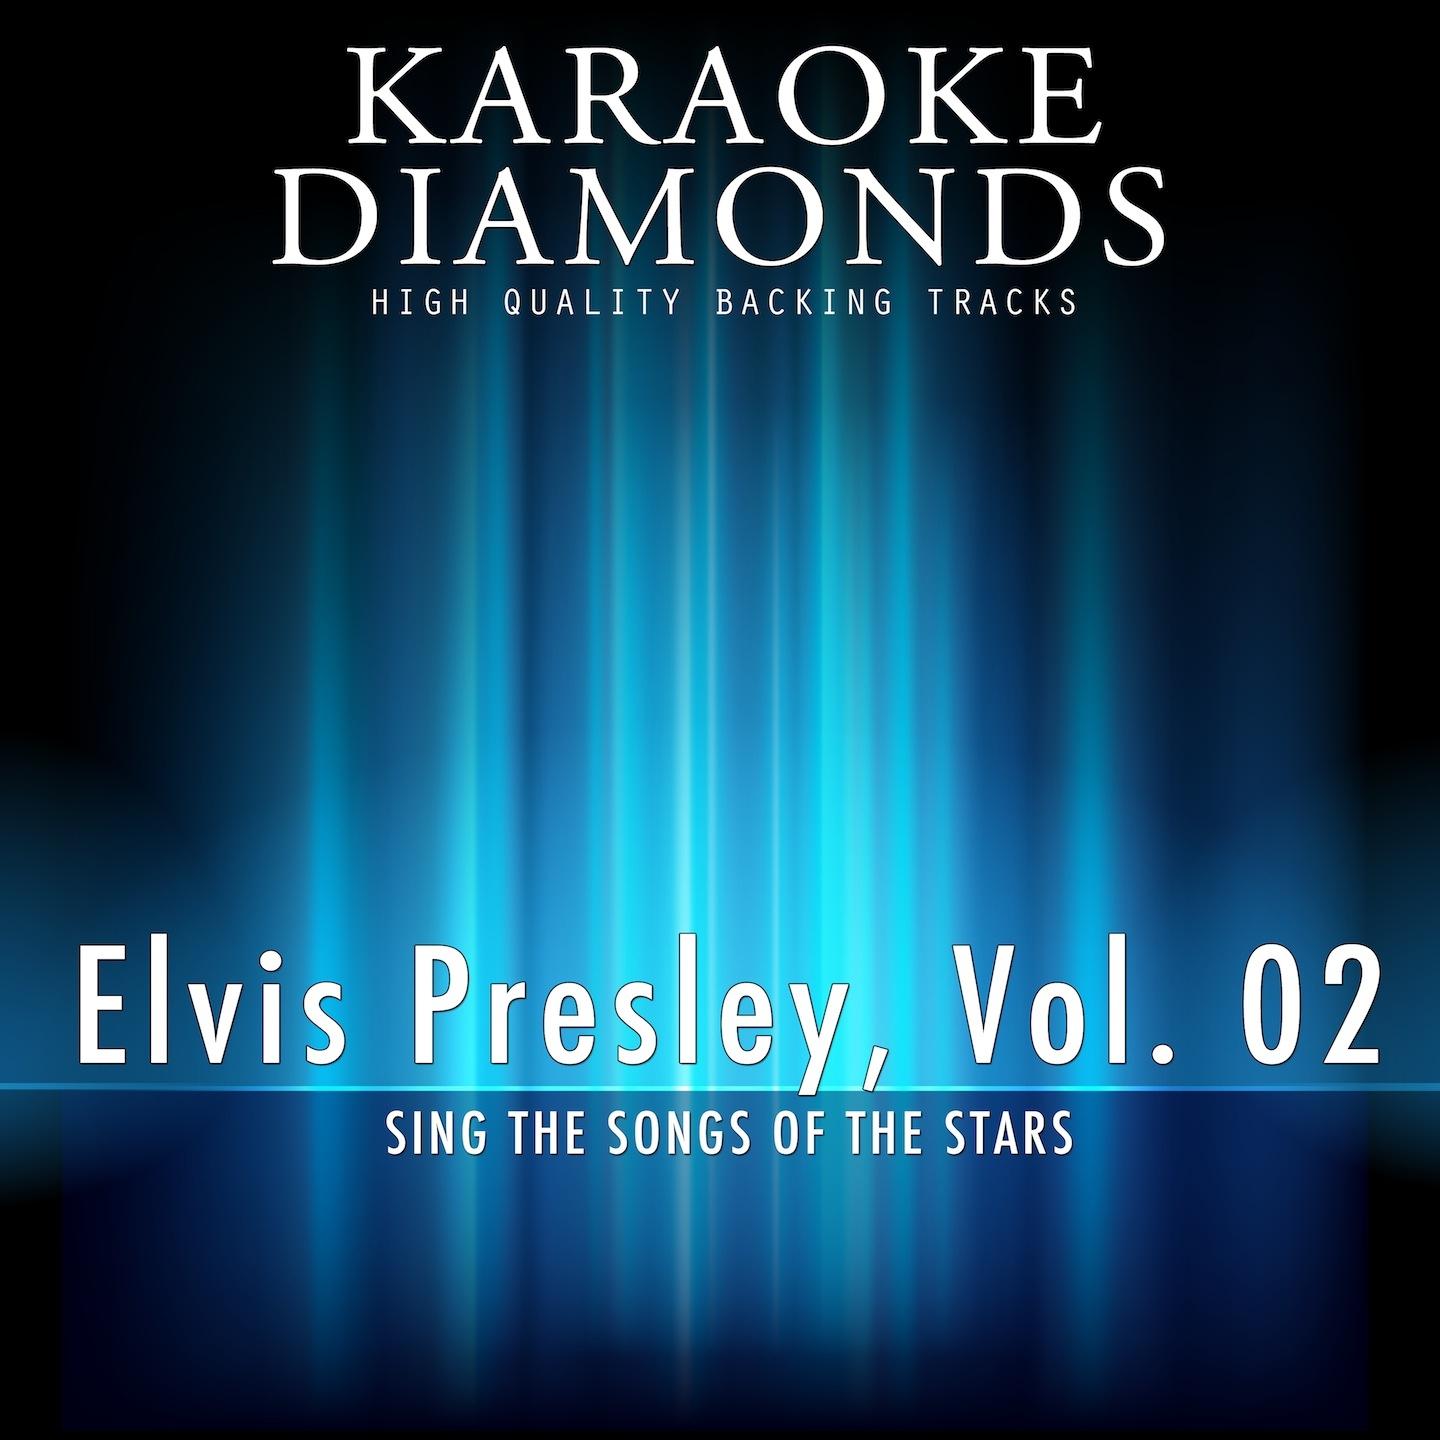 Ask Me (Karaoke Version In the Style of Elvis Presley)